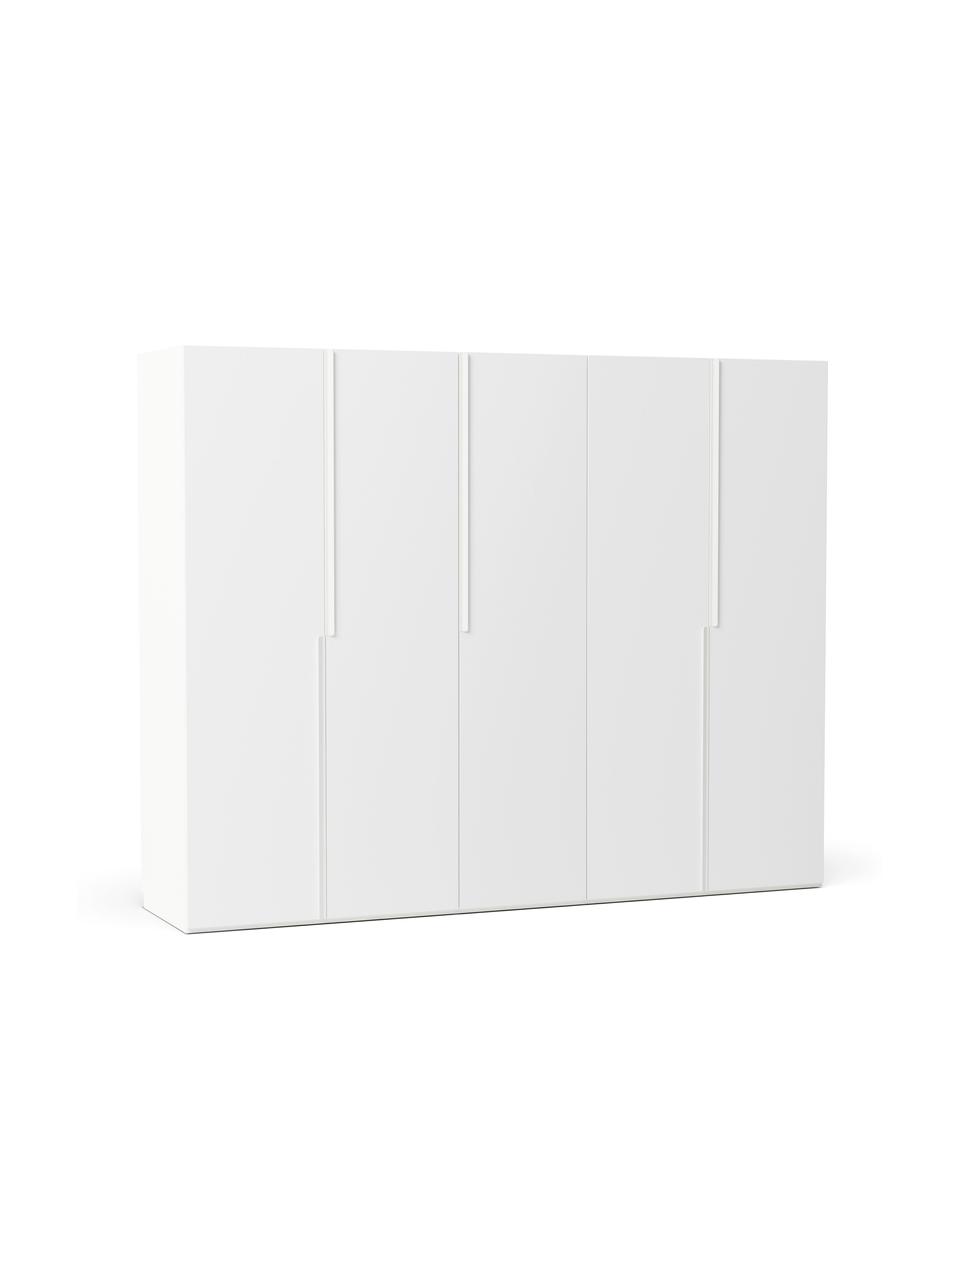 Modularer Drehtürenschrank Leon in Weiß, 250 cm Breite, mehrere Varianten, Korpus: Spanplatte, melaminbeschi, Weiß, Basic Interior, Höhe 200 cm